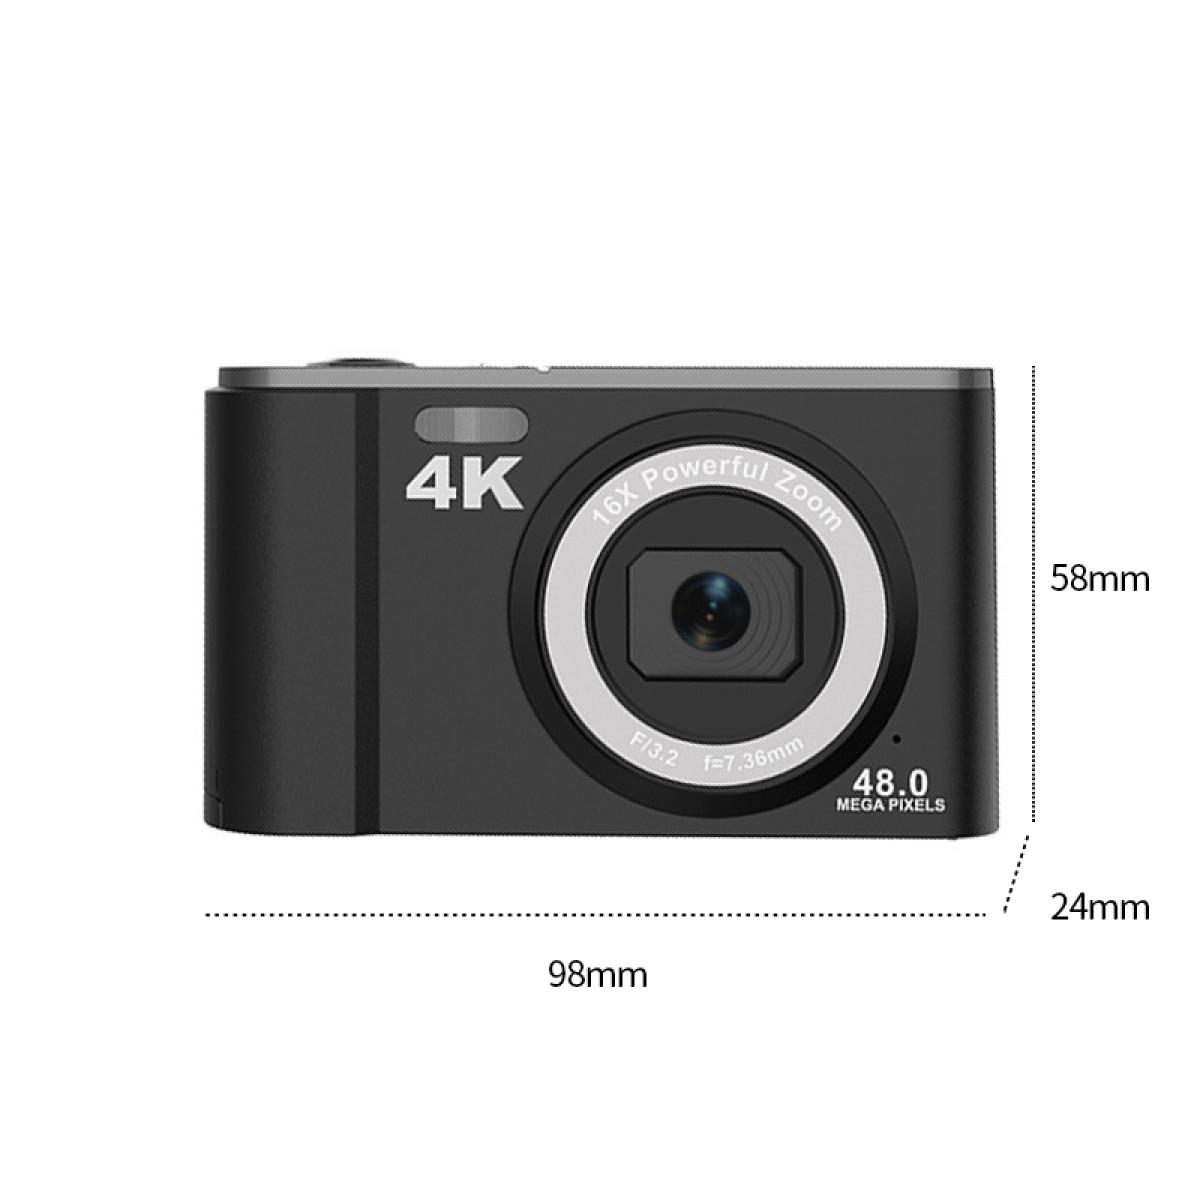 INF Digitalkamera 4K 48MP 2,8-Zoll-Display schwarz Zoom 16-fach Digitalkamera